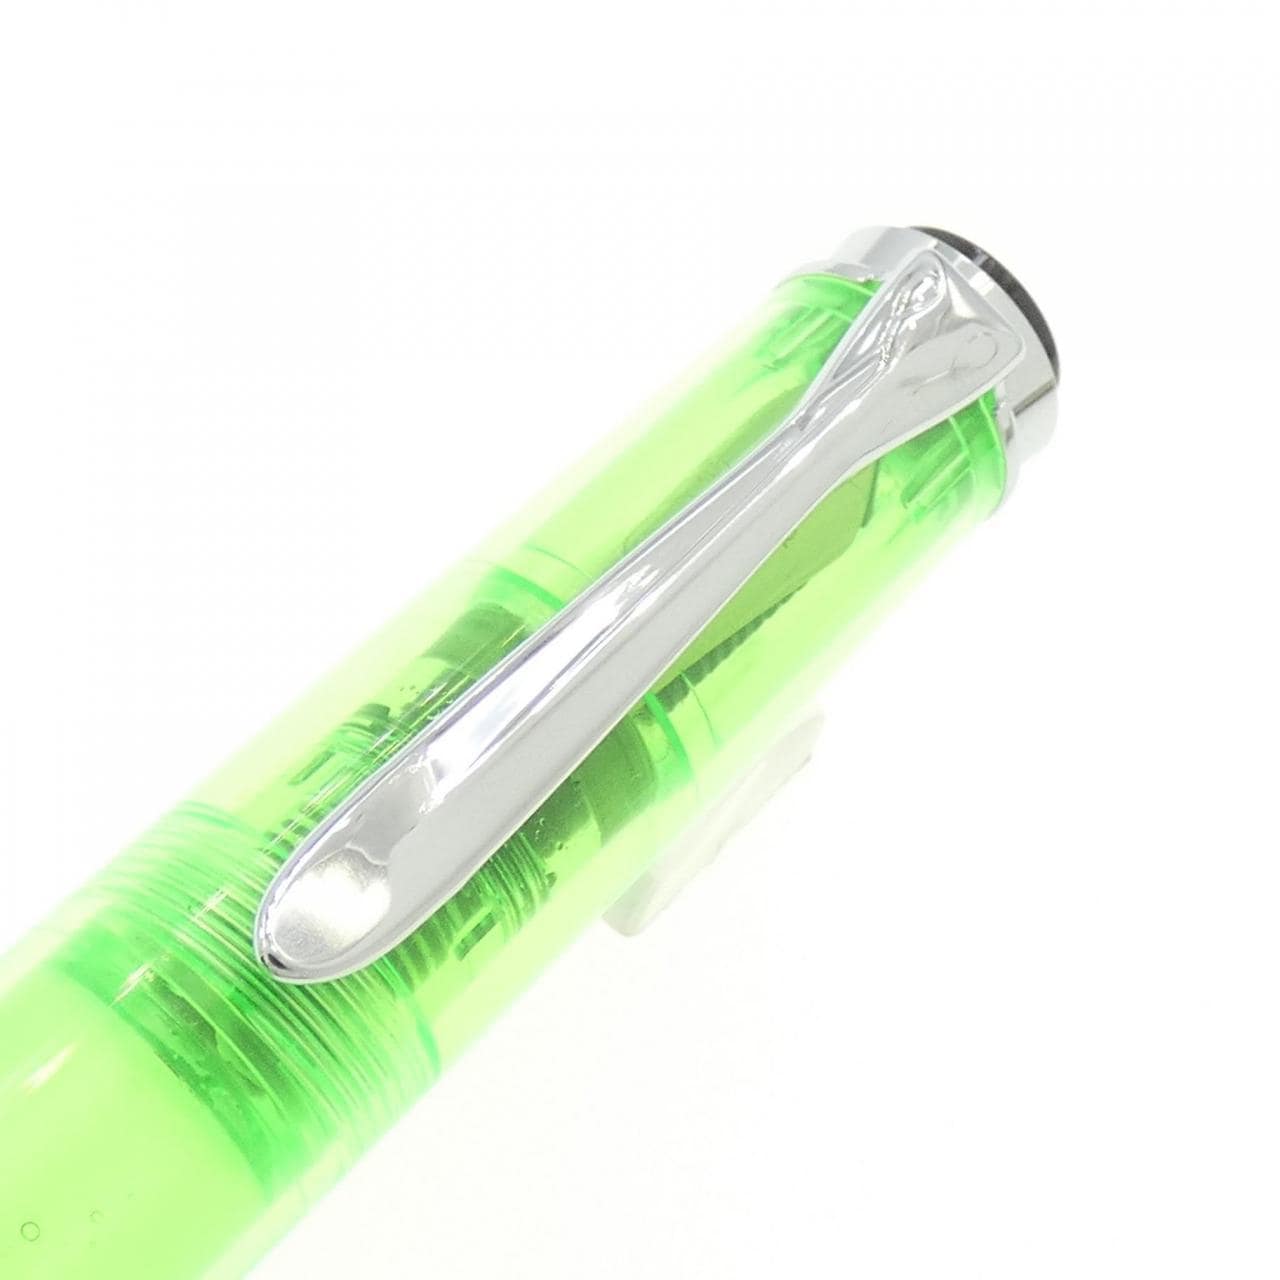 Pelikan M205DUO Demonstrator Shiny Green Fountain Pen